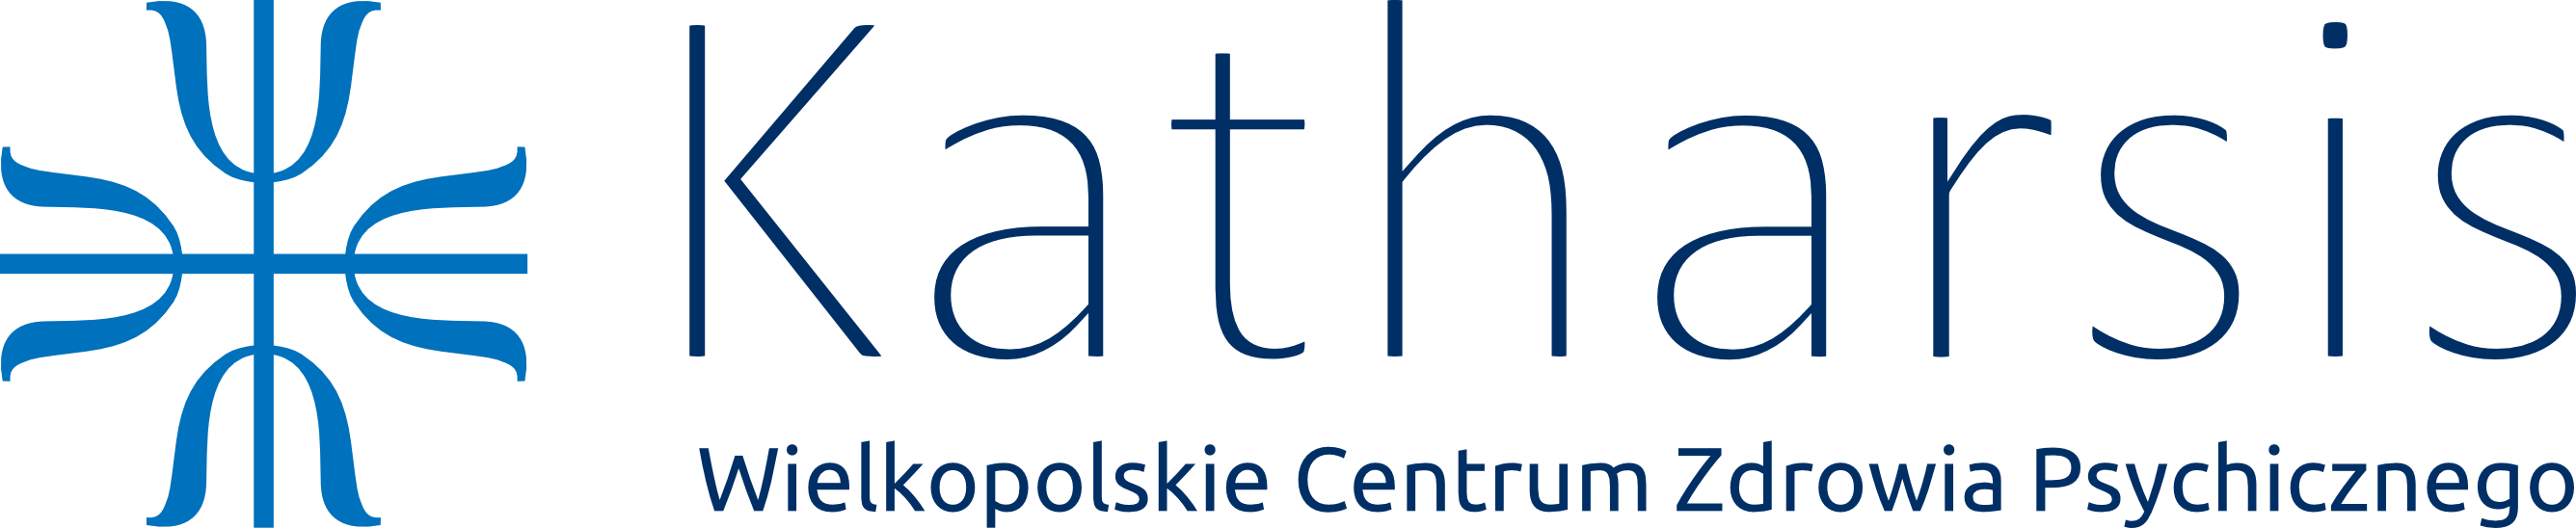 Wielkopolskie Centrum Zdrowia Psychicznego Katharsis | Poradnia Katharsis